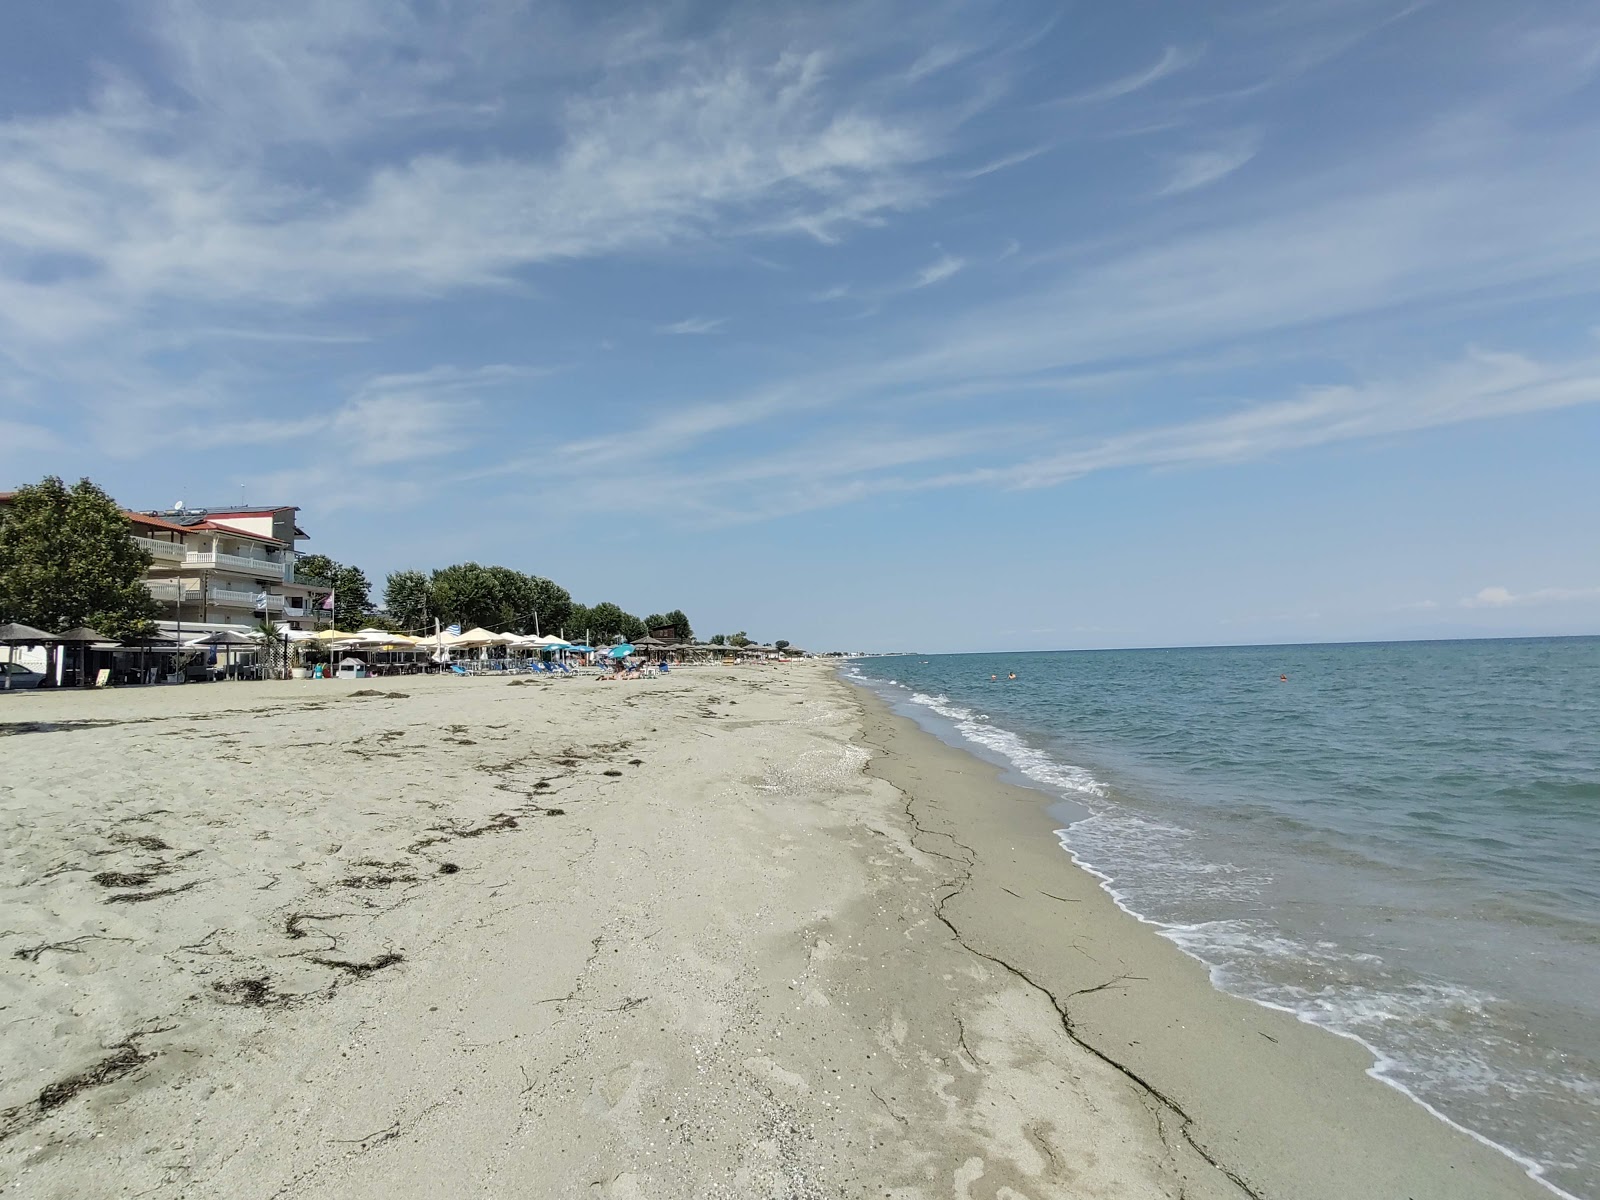 Fotografie cu Olympiaki Akti beach - locul popular printre cunoscătorii de relaxare